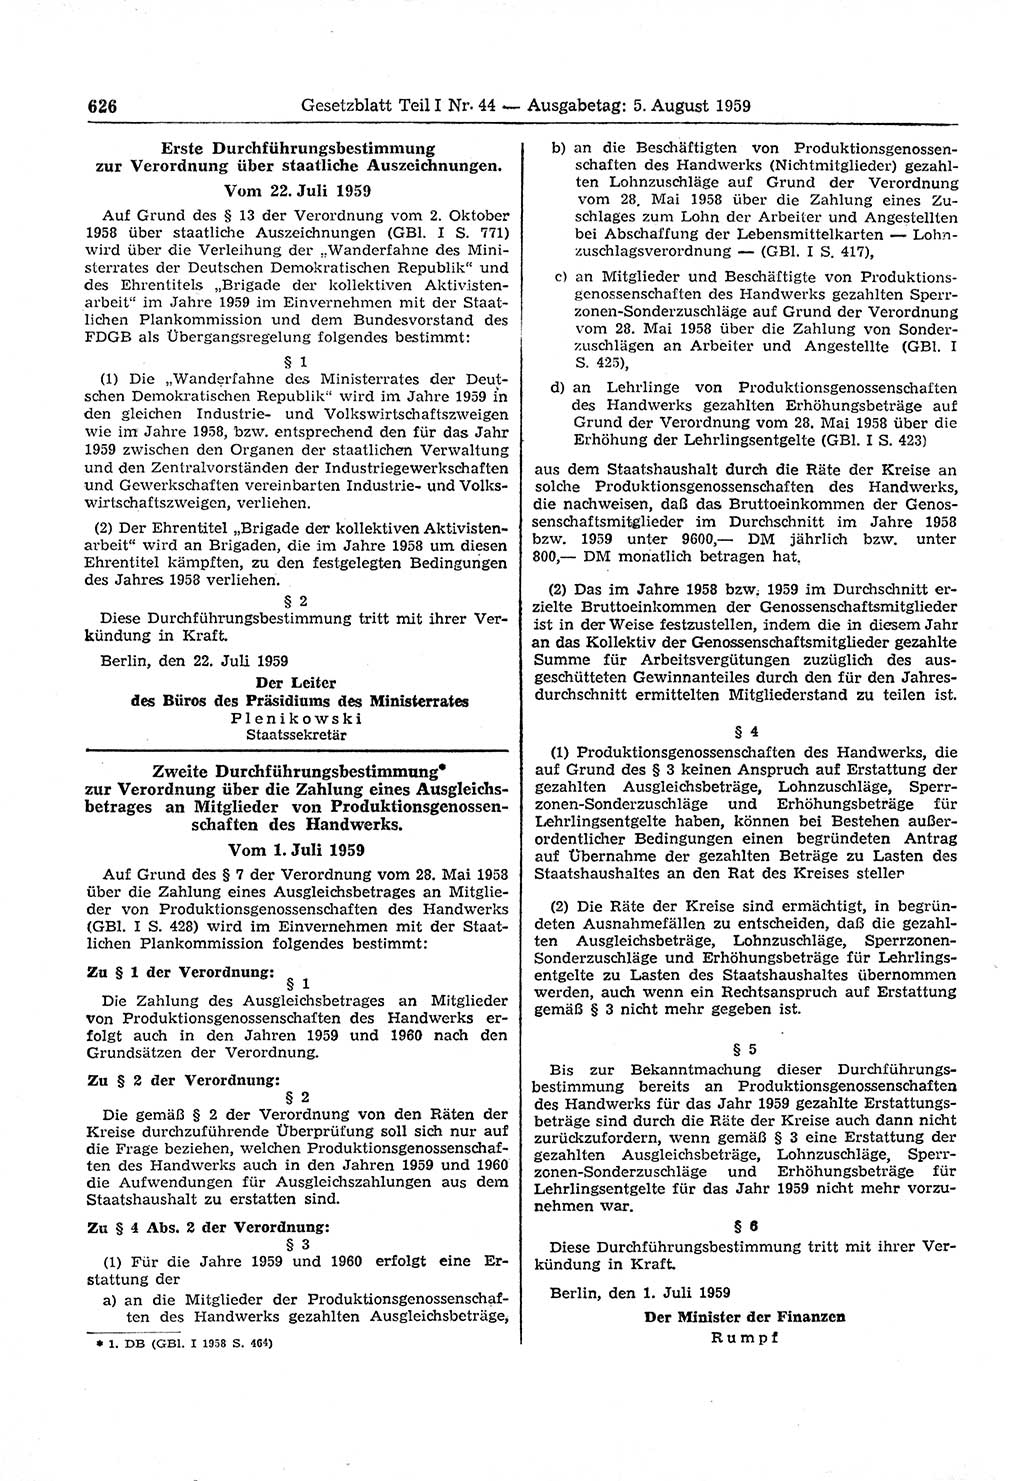 Gesetzblatt (GBl.) der Deutschen Demokratischen Republik (DDR) Teil Ⅰ 1959, Seite 626 (GBl. DDR Ⅰ 1959, S. 626)